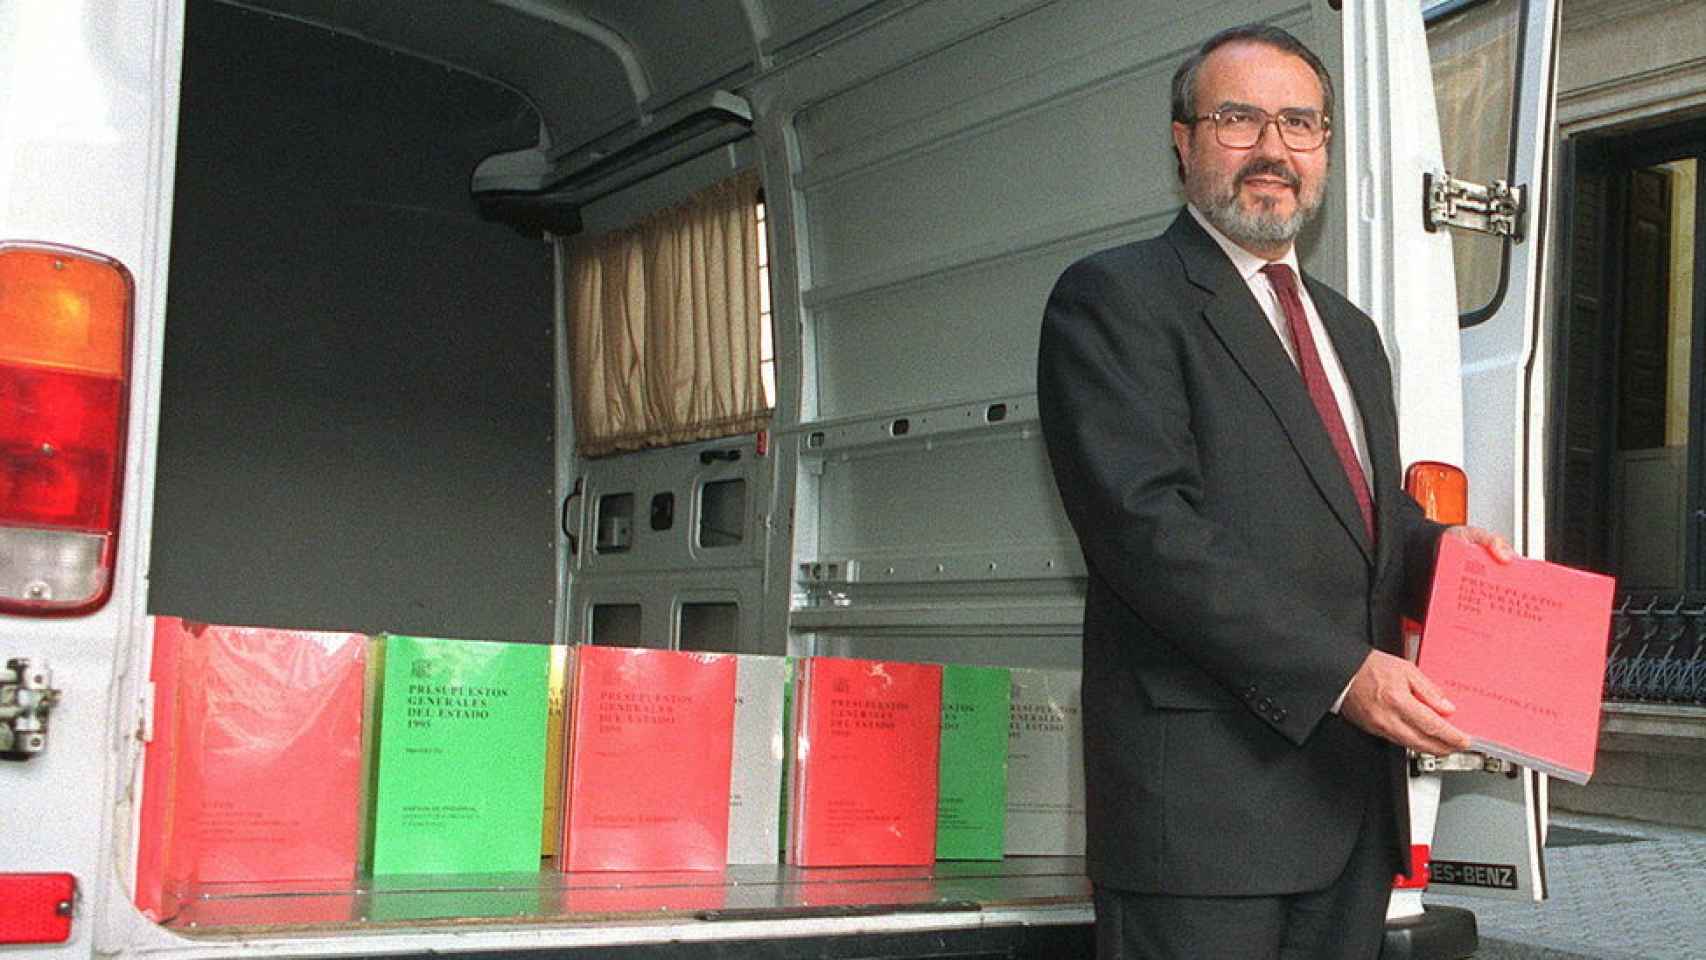 El ministro de Economía y Hacienda, Pedro Solbes, sacando los PGE de una furgoneta.